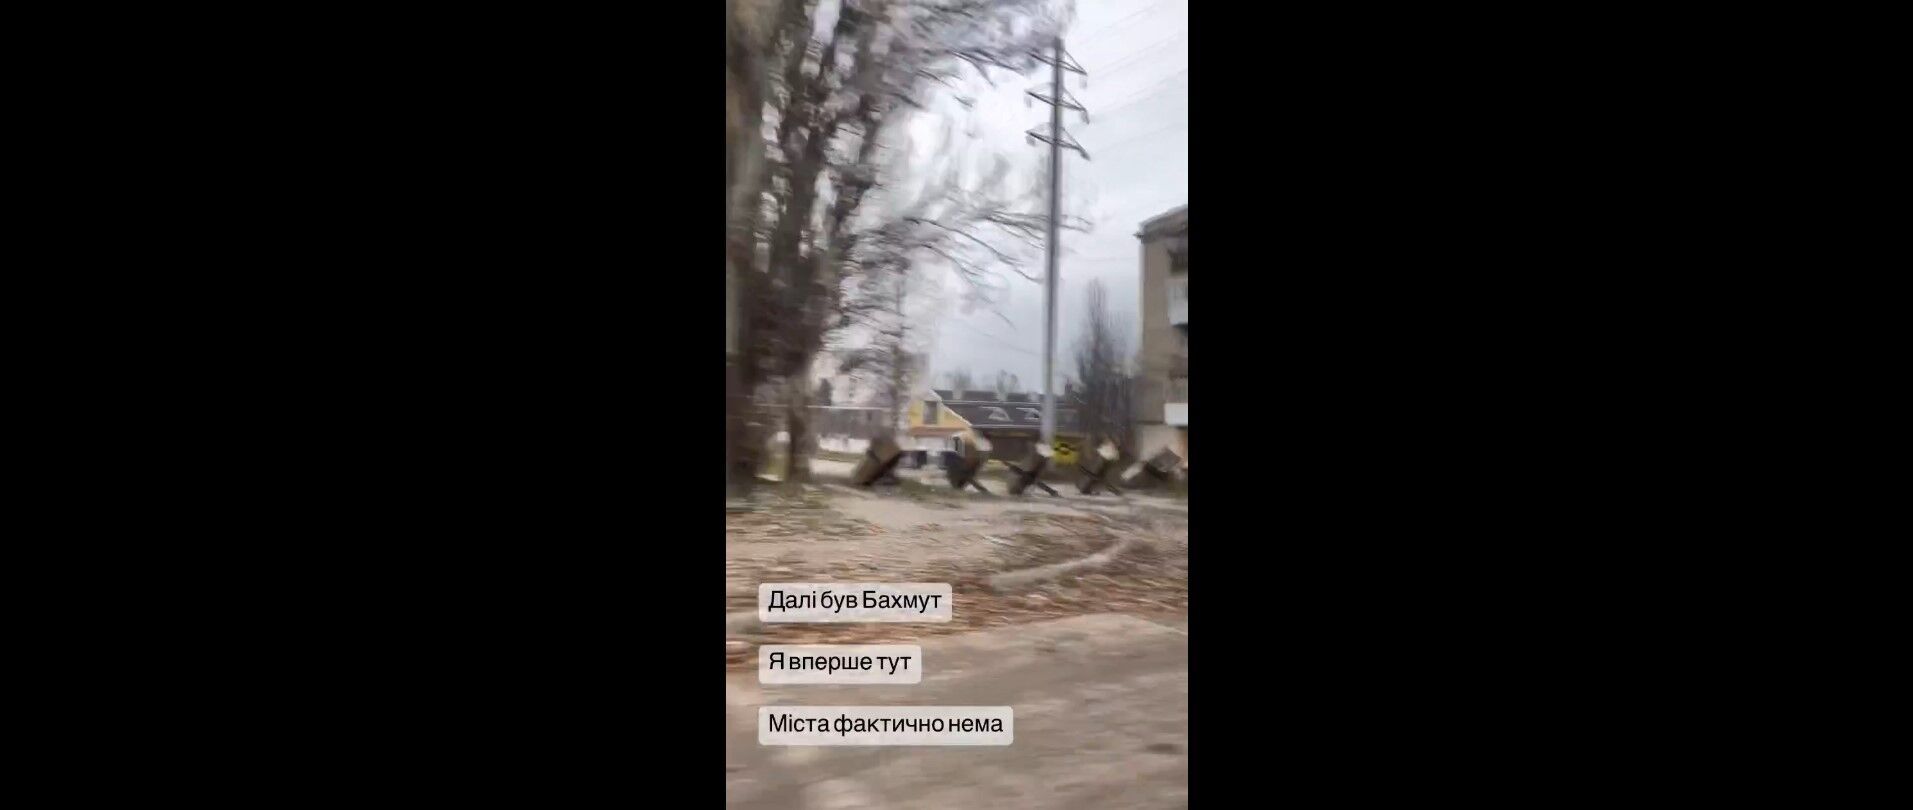 Появились кадры из Бахмута: ''города фактически нет'', но ВСУ держит позиции (видео)